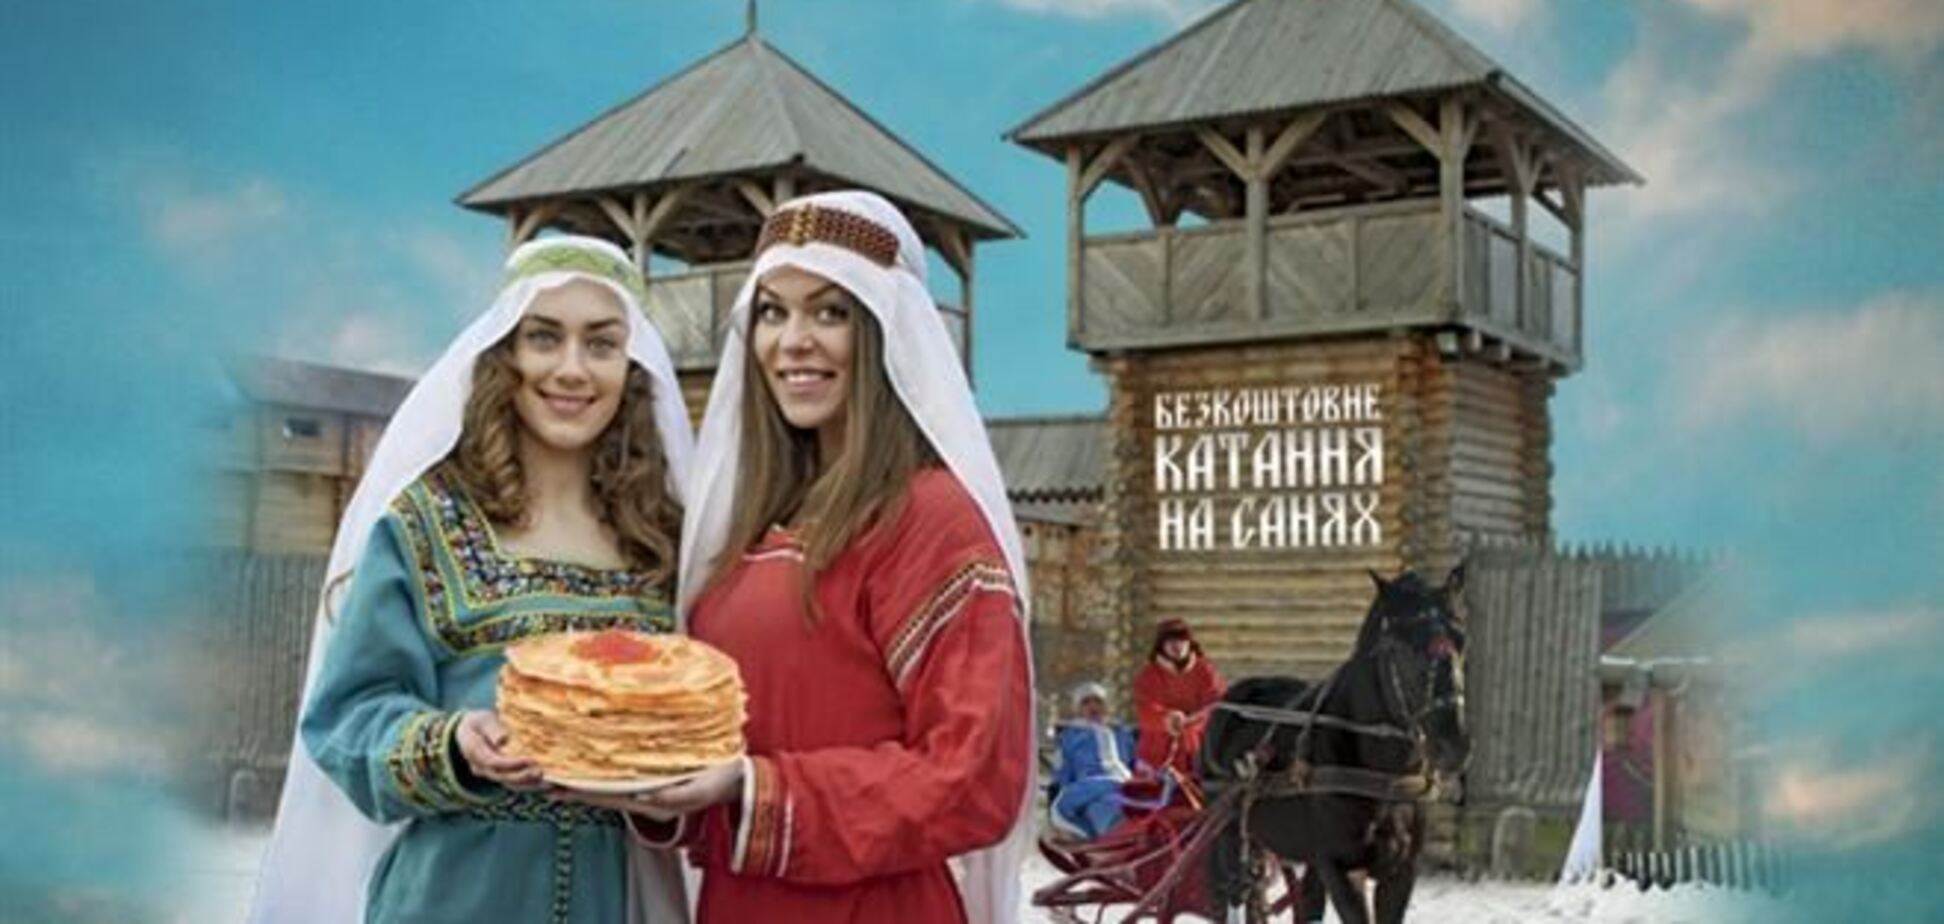 В Древнем Киеве состоится празднование Масленицы